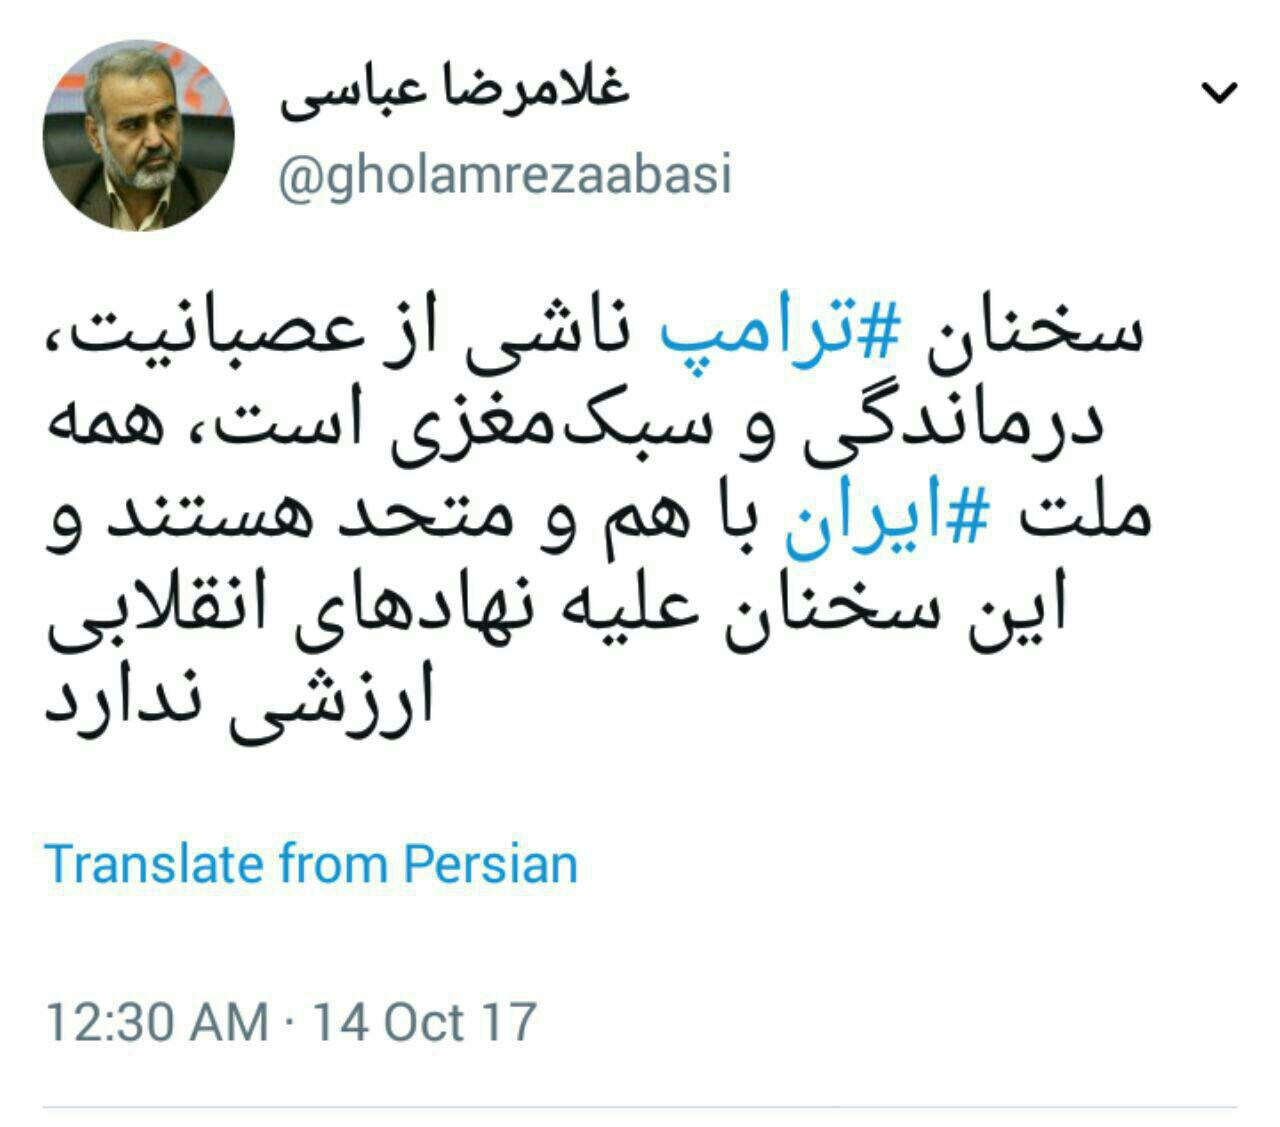 نوئیت رئیس کانون عالی انجمن های صنفی کارگران کشور در واکنش به مواضع ضد ایرانی ترامپ